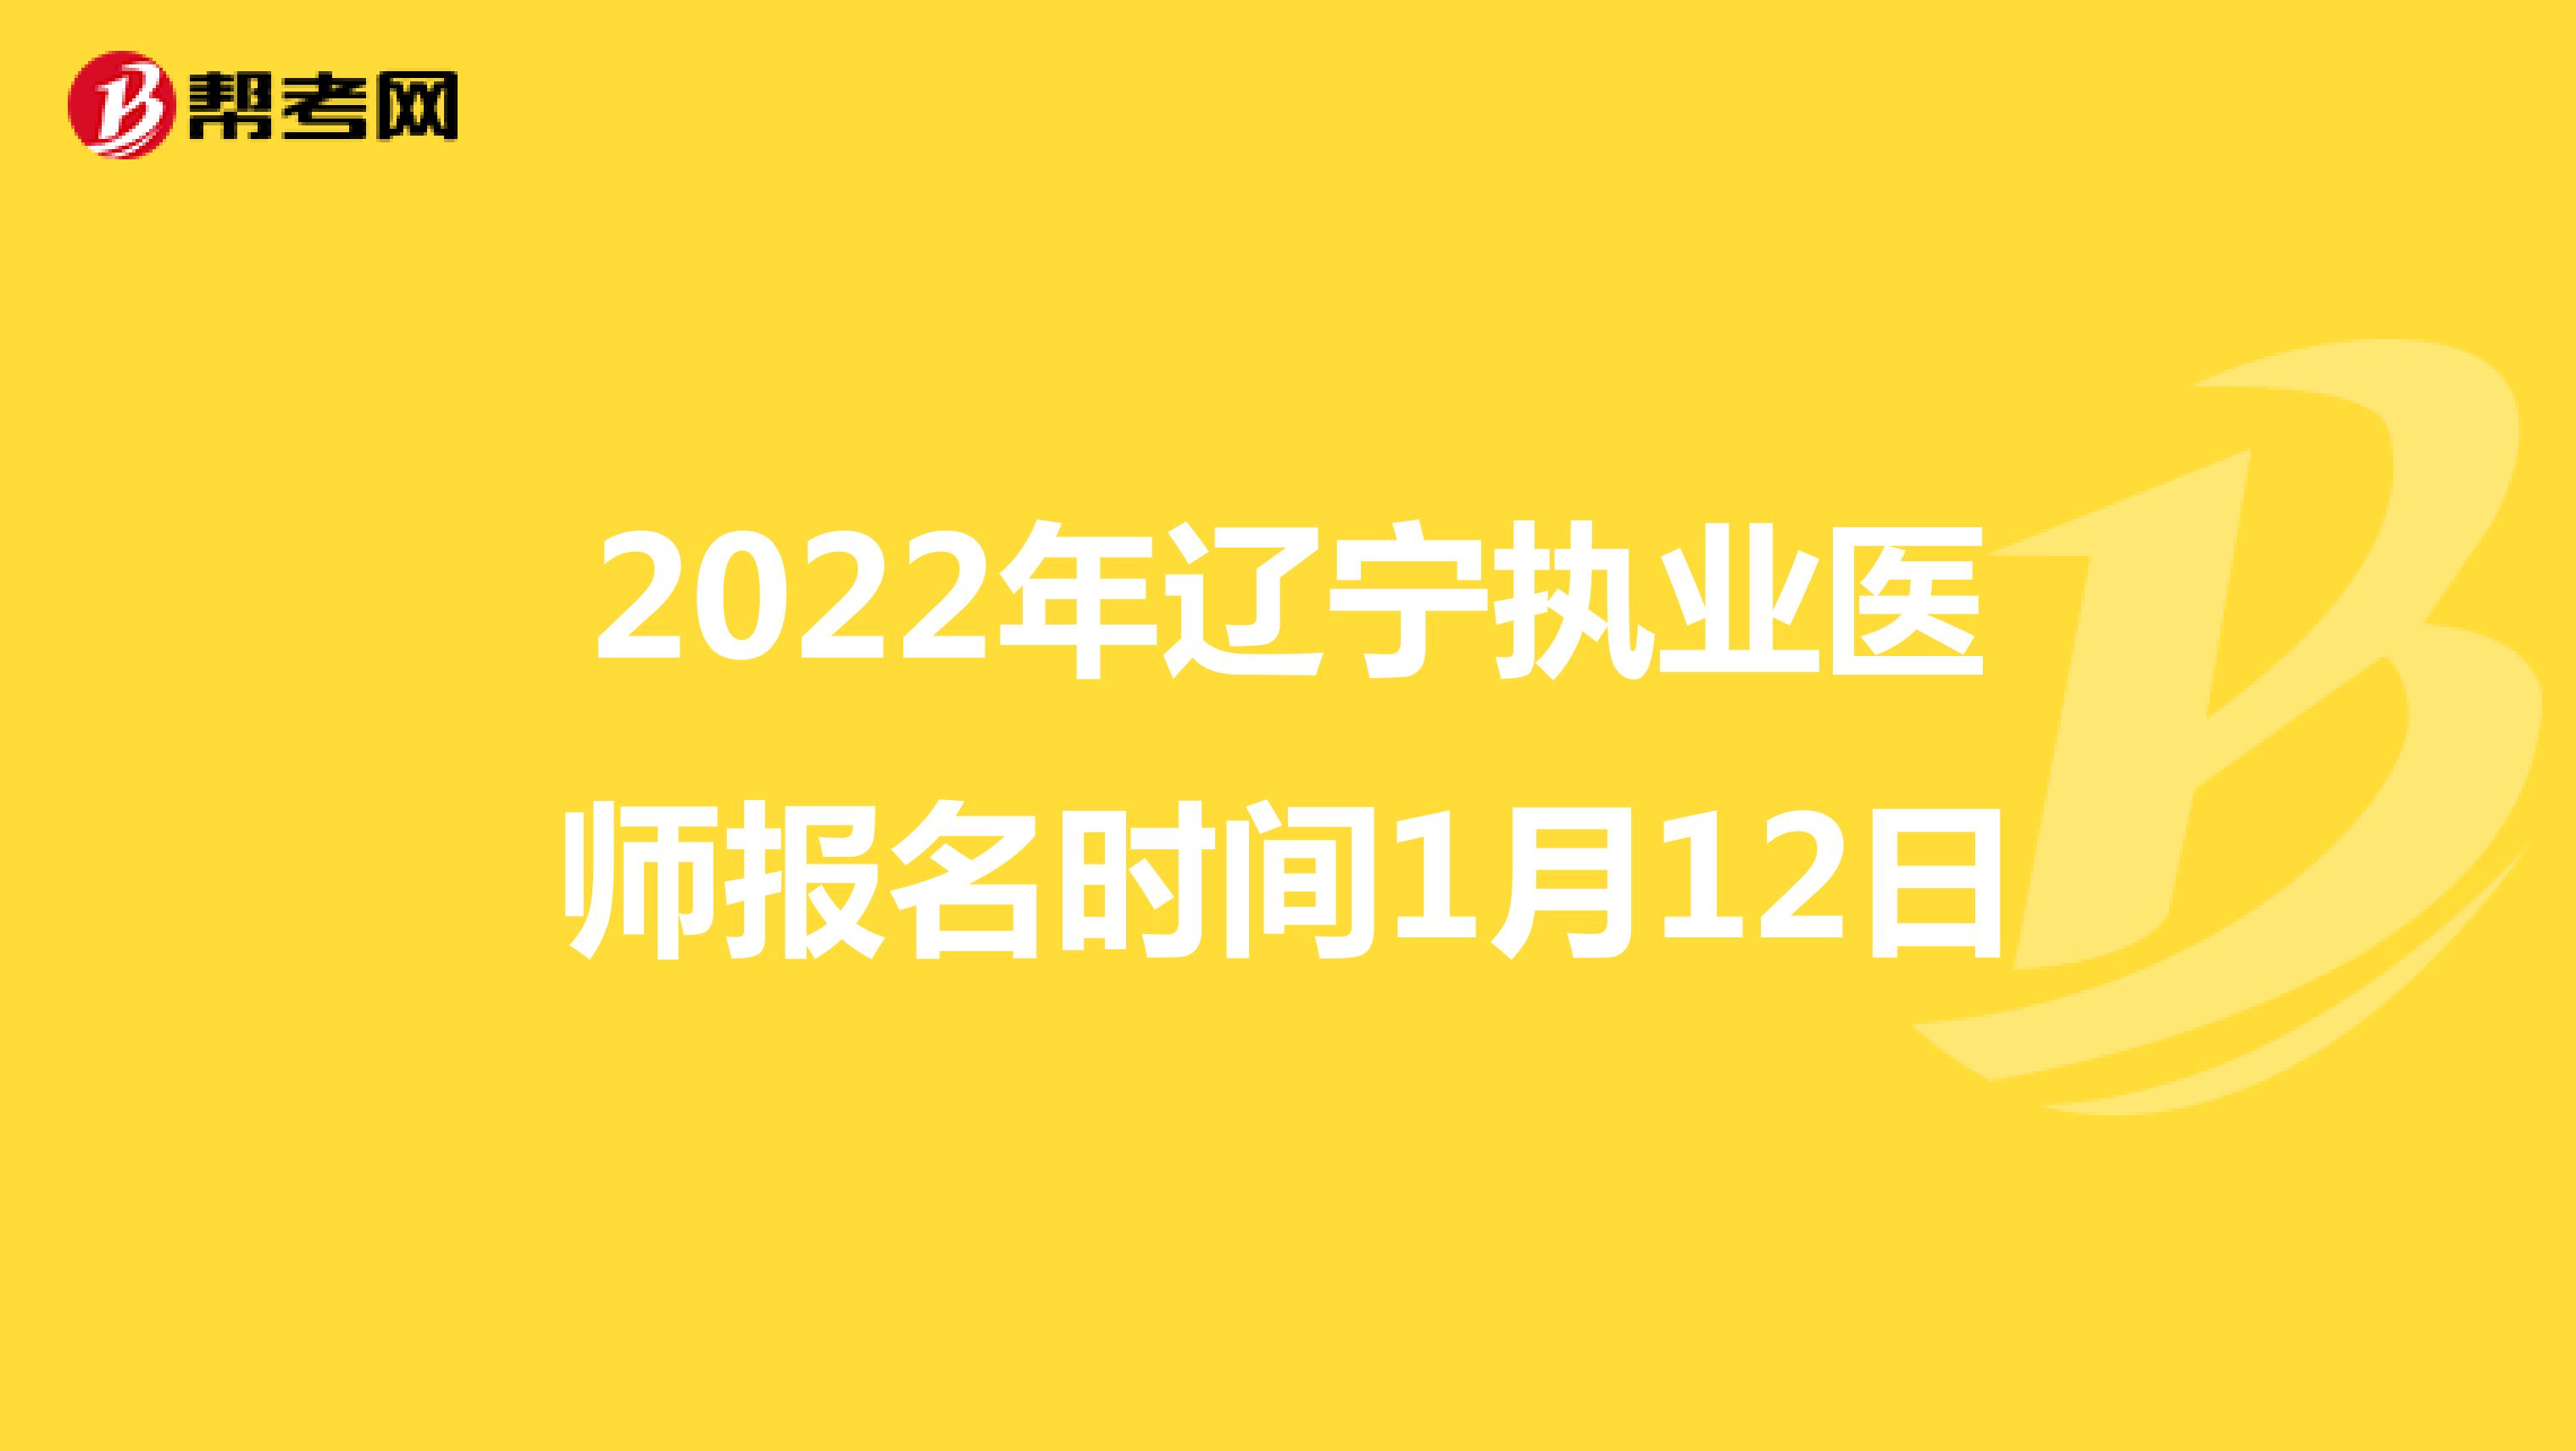 2022年辽宁执业医师报名时间1月12日